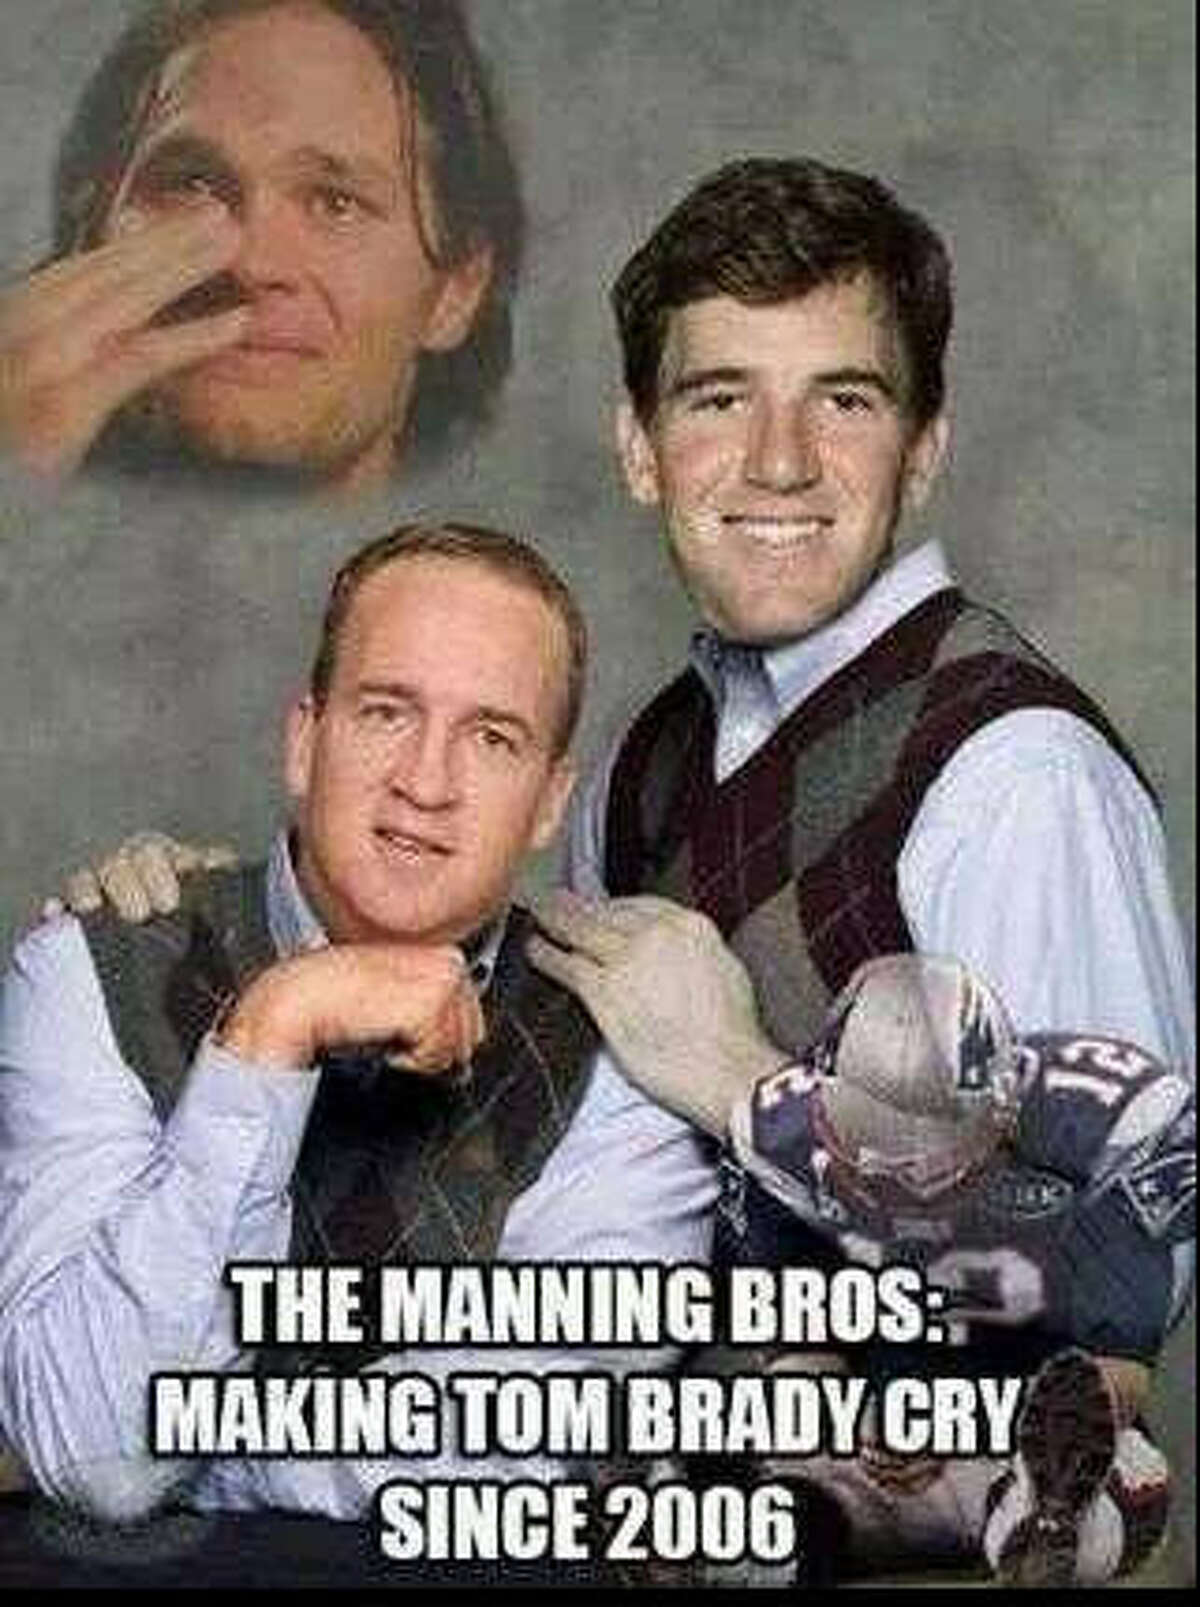 The Internet savages Tom Brady, Carson Palmer via memes.